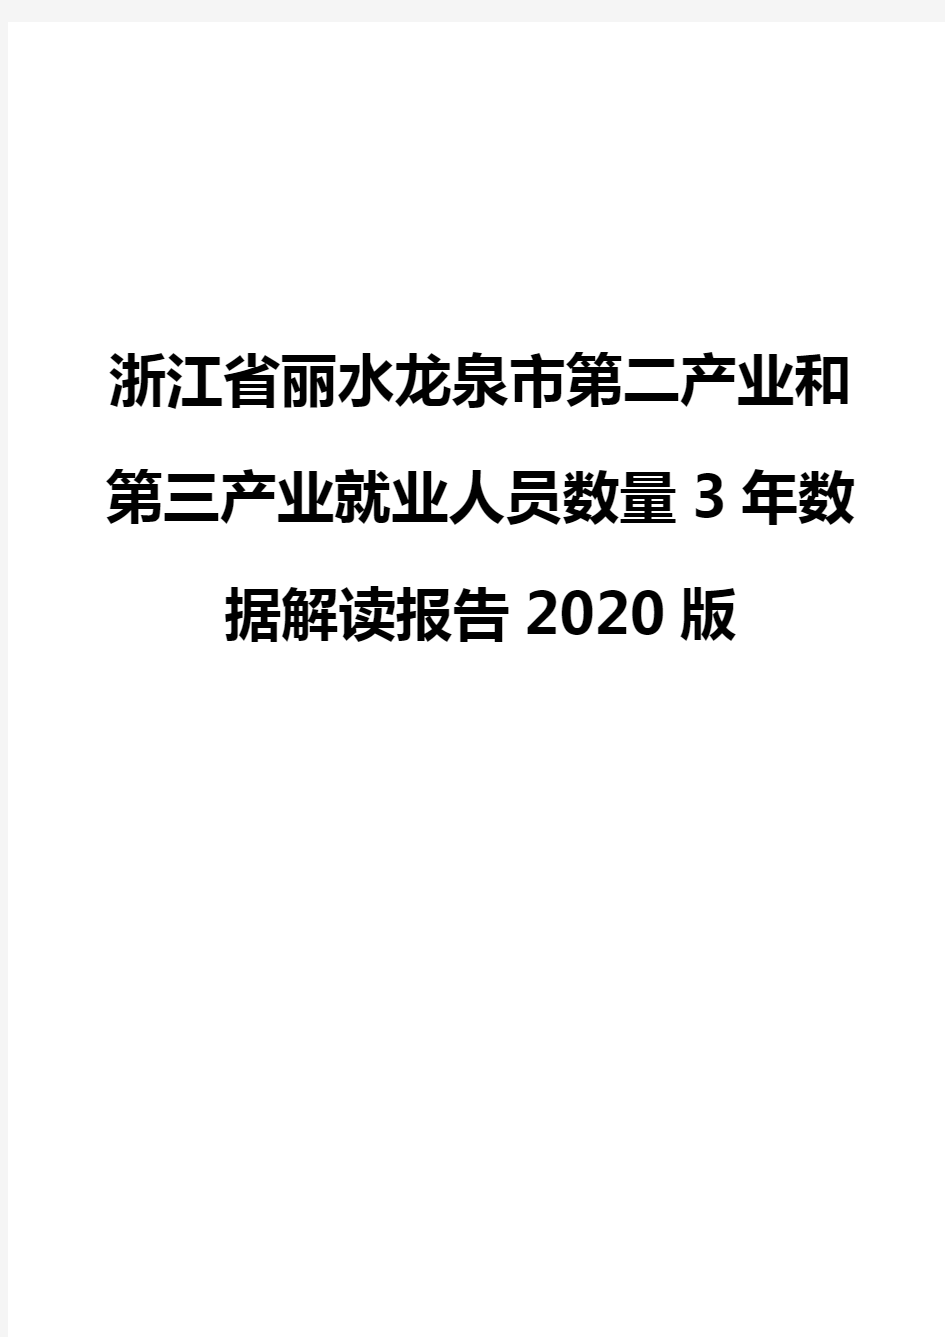 浙江省丽水龙泉市第二产业和第三产业就业人员数量3年数据解读报告2020版